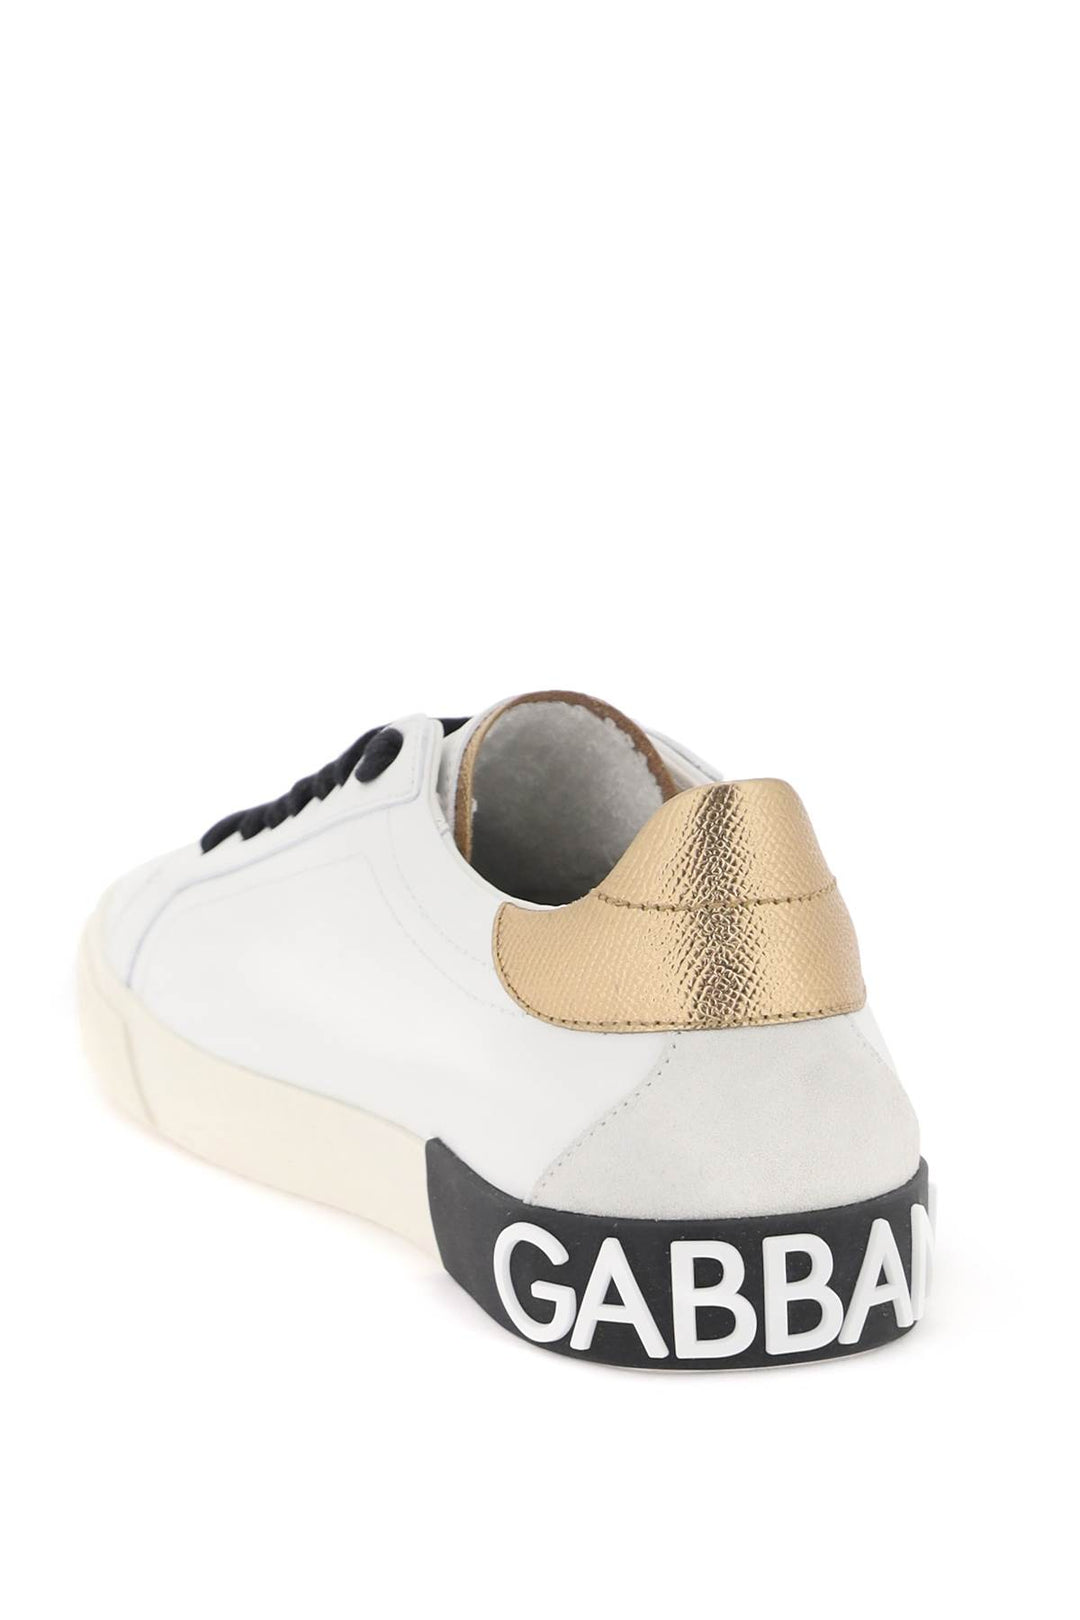 Sneakers Portofino Vintage In Pelle Con Dg Strass - Dolce & Gabbana - Donna